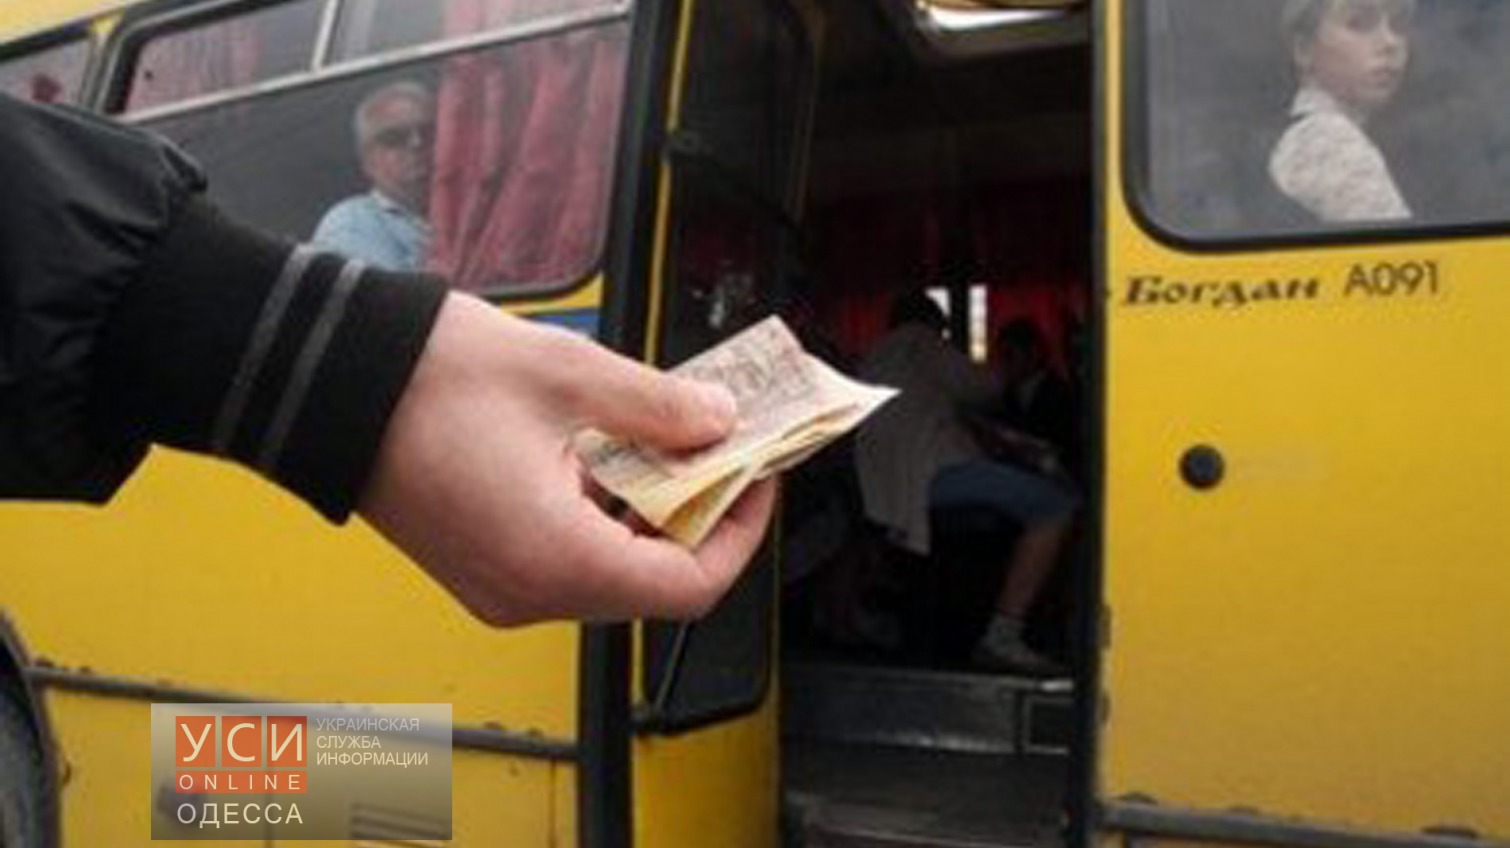 Одесские маршрутки уже дороже киевских «фото»